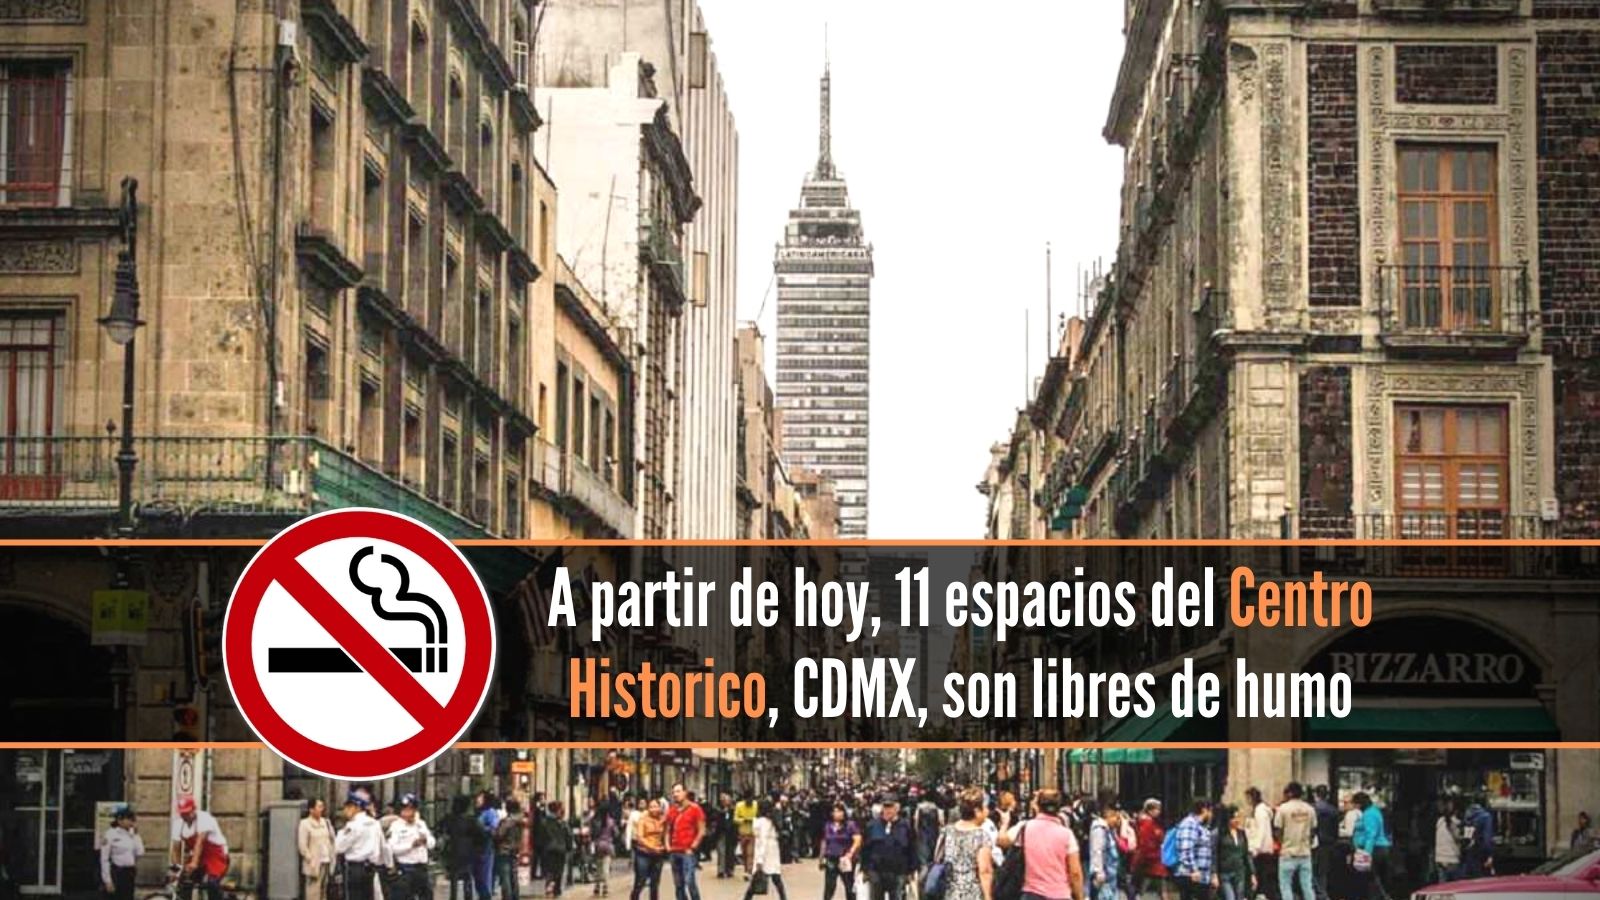 Centro Histórico CDMX libre de humo de tabaco